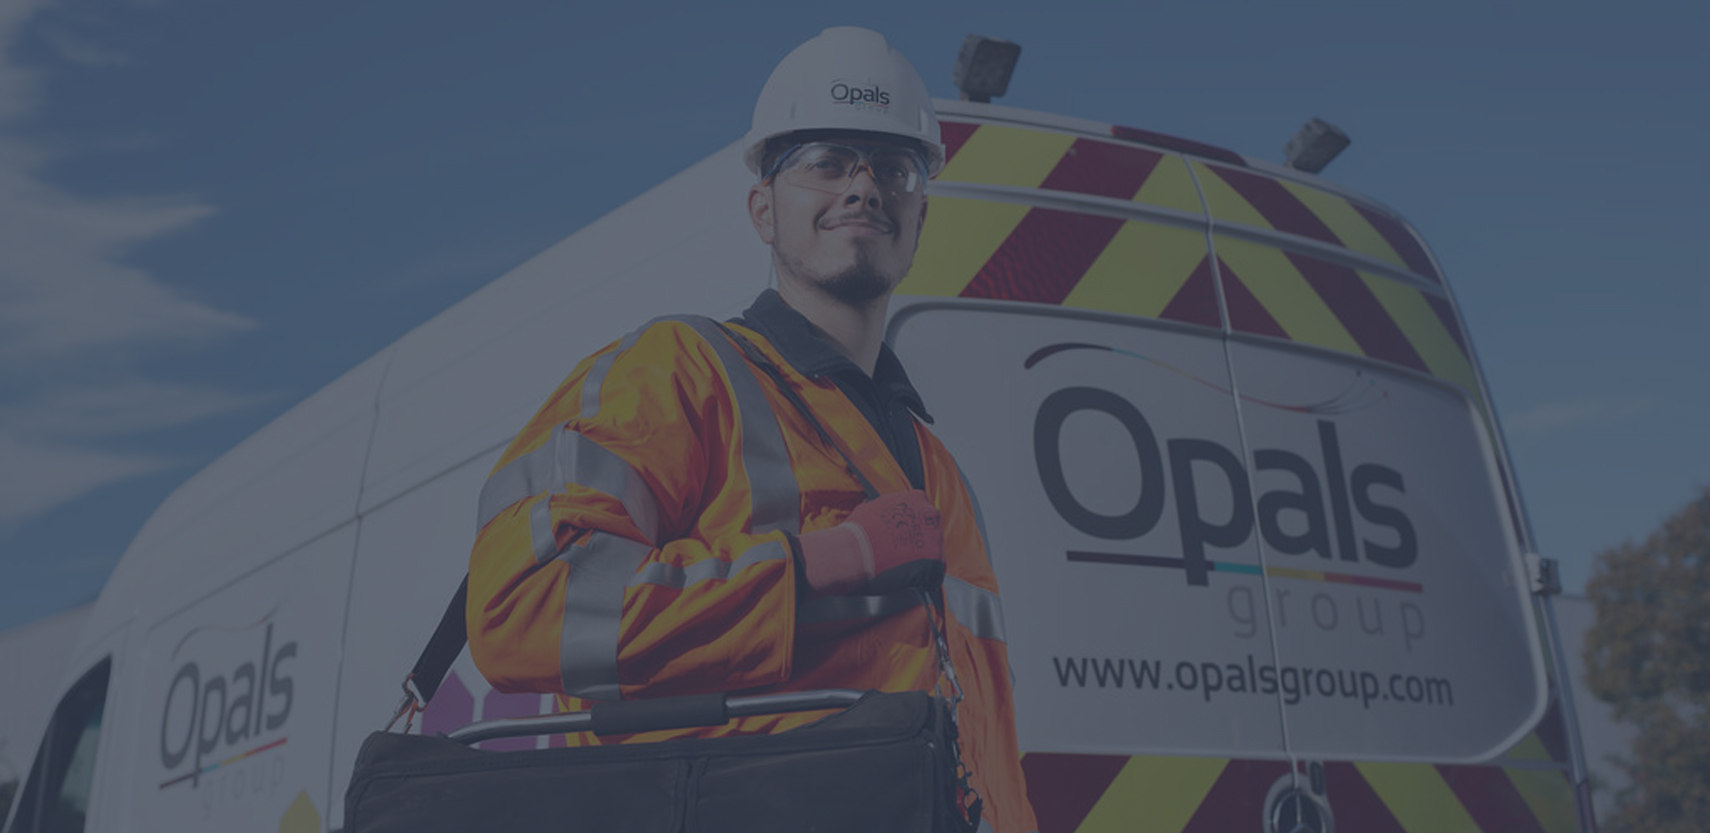 Image of OCU Opals acquisition